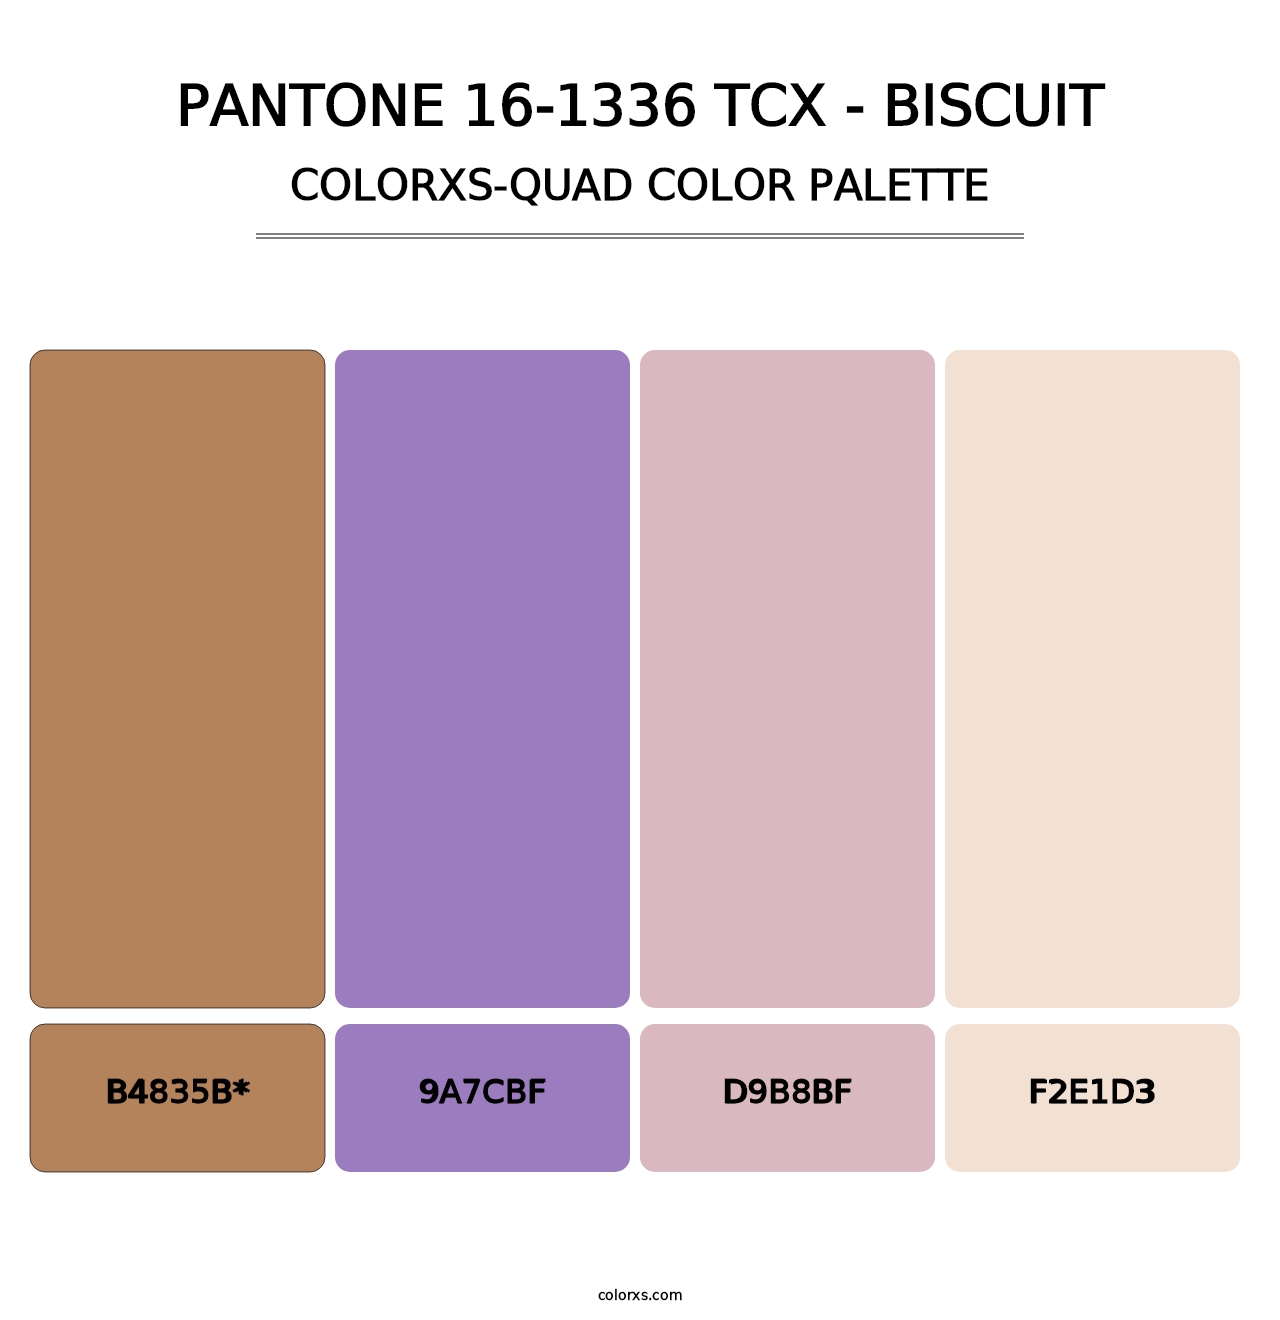 PANTONE 16-1336 TCX - Biscuit - Colorxs Quad Palette